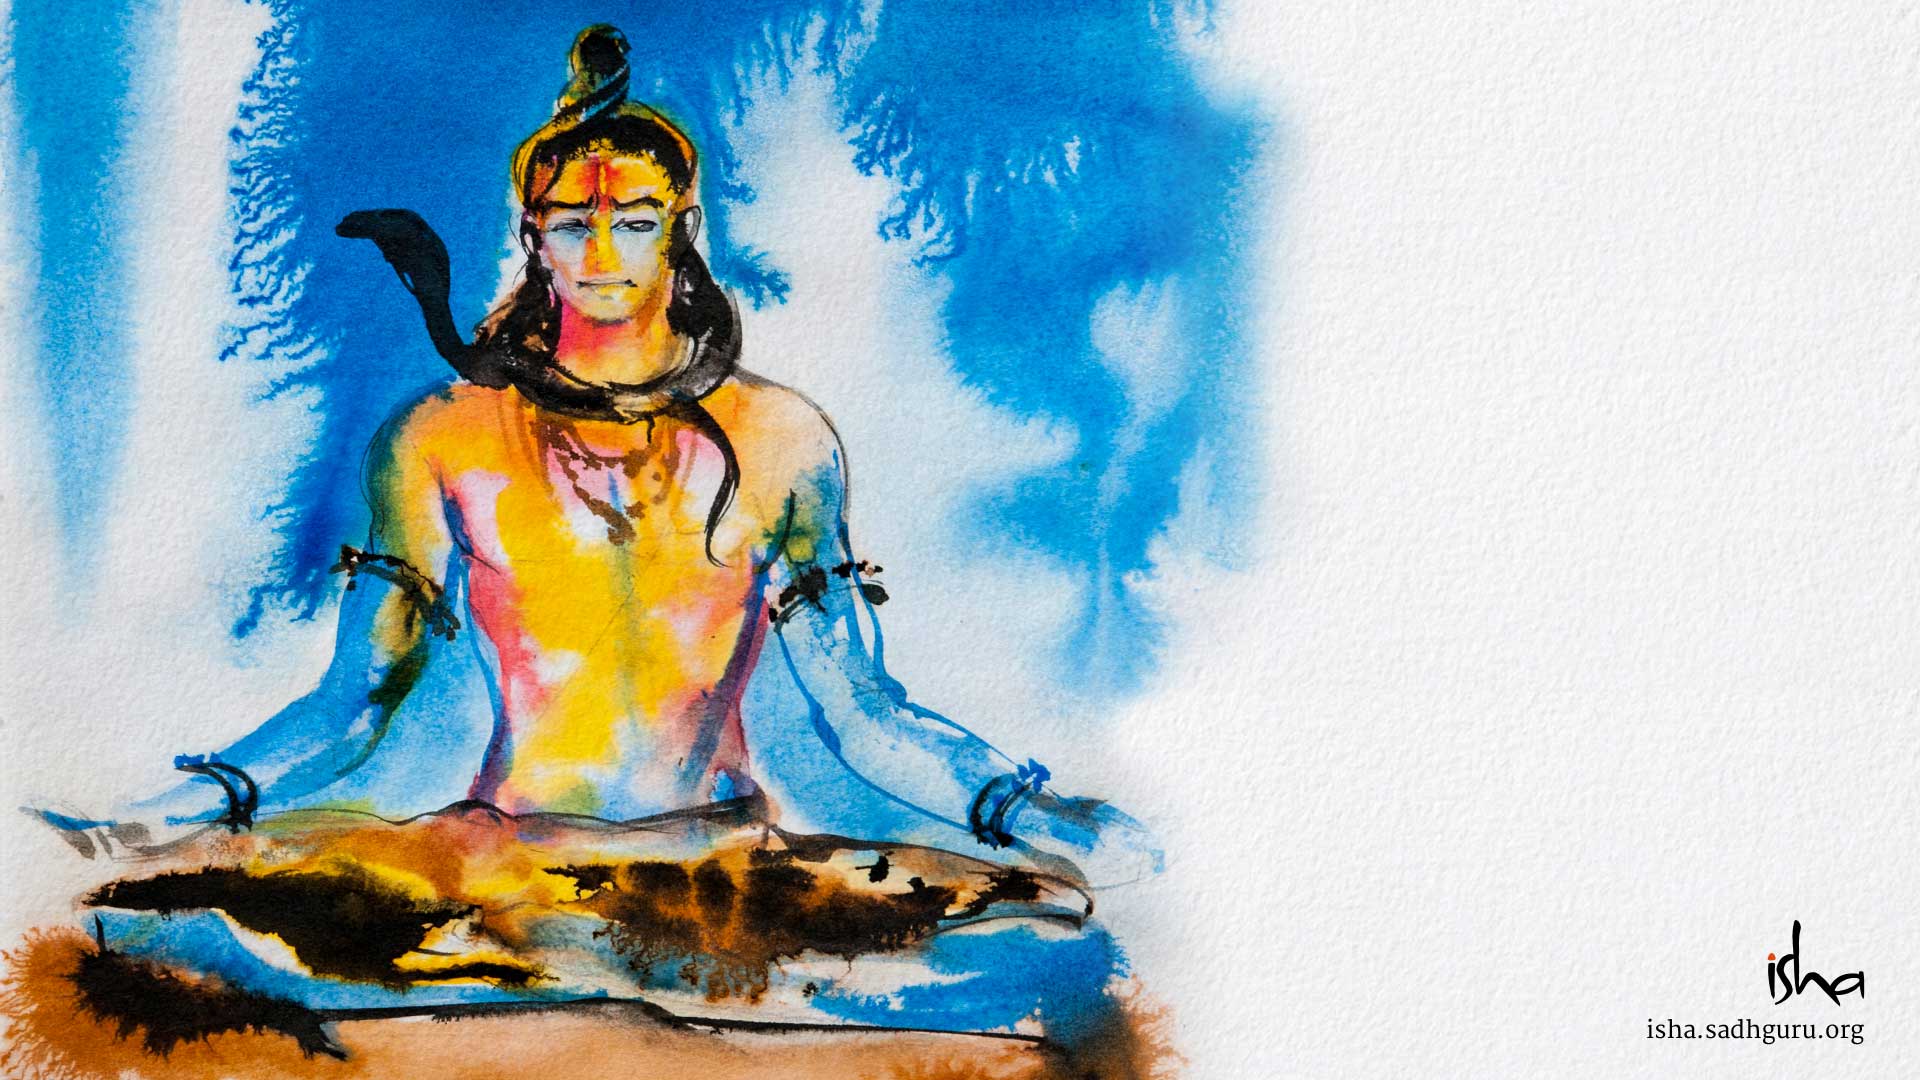 Shiva Isha Paintings 1920x1080 Wallpaper Teahub Io Images of lord shiva hd. shiva isha paintings 1920x1080